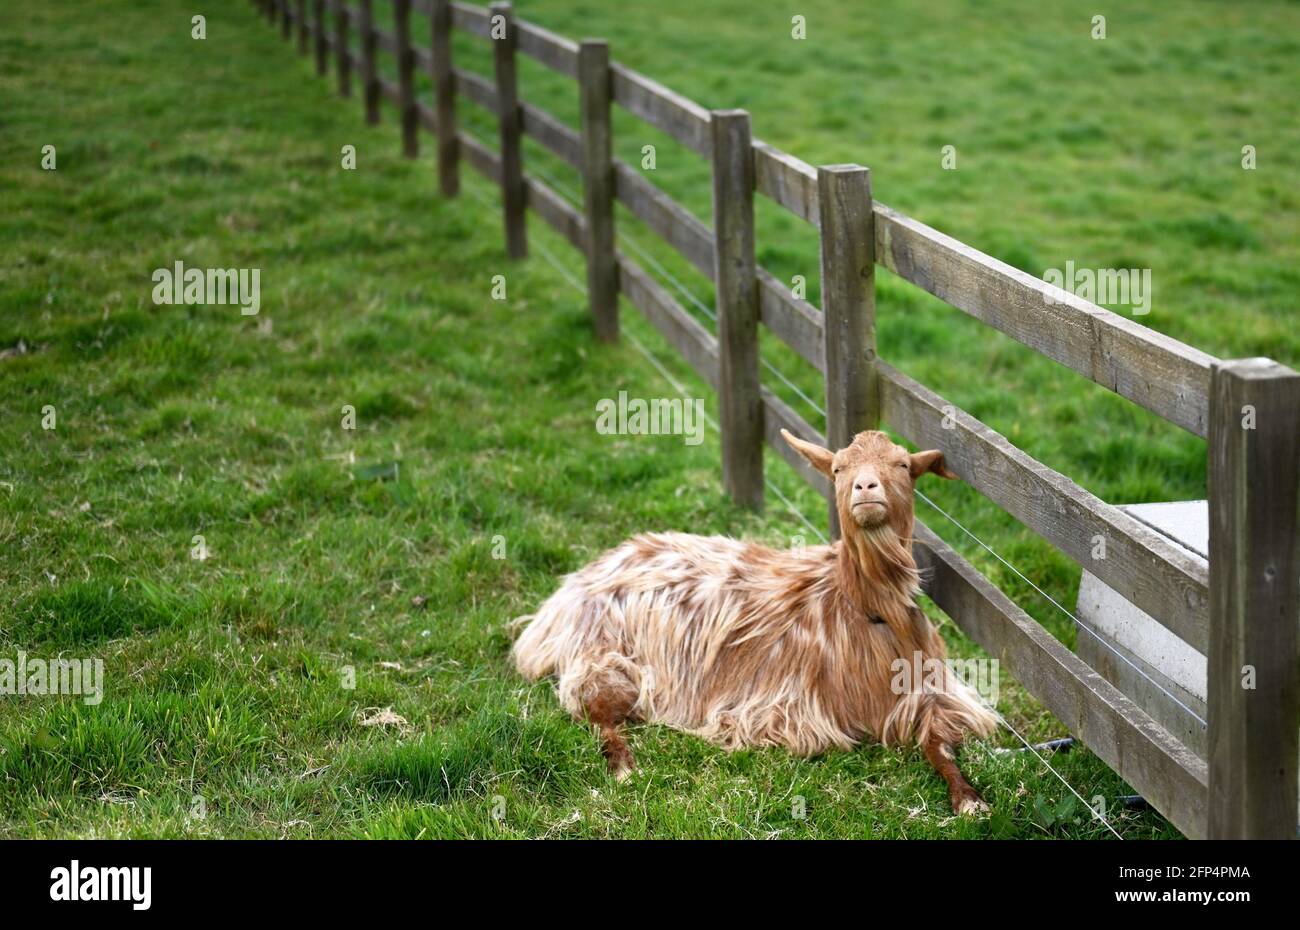 Jolie chèvre dorée Guernesey assise dans un champ Banque D'Images